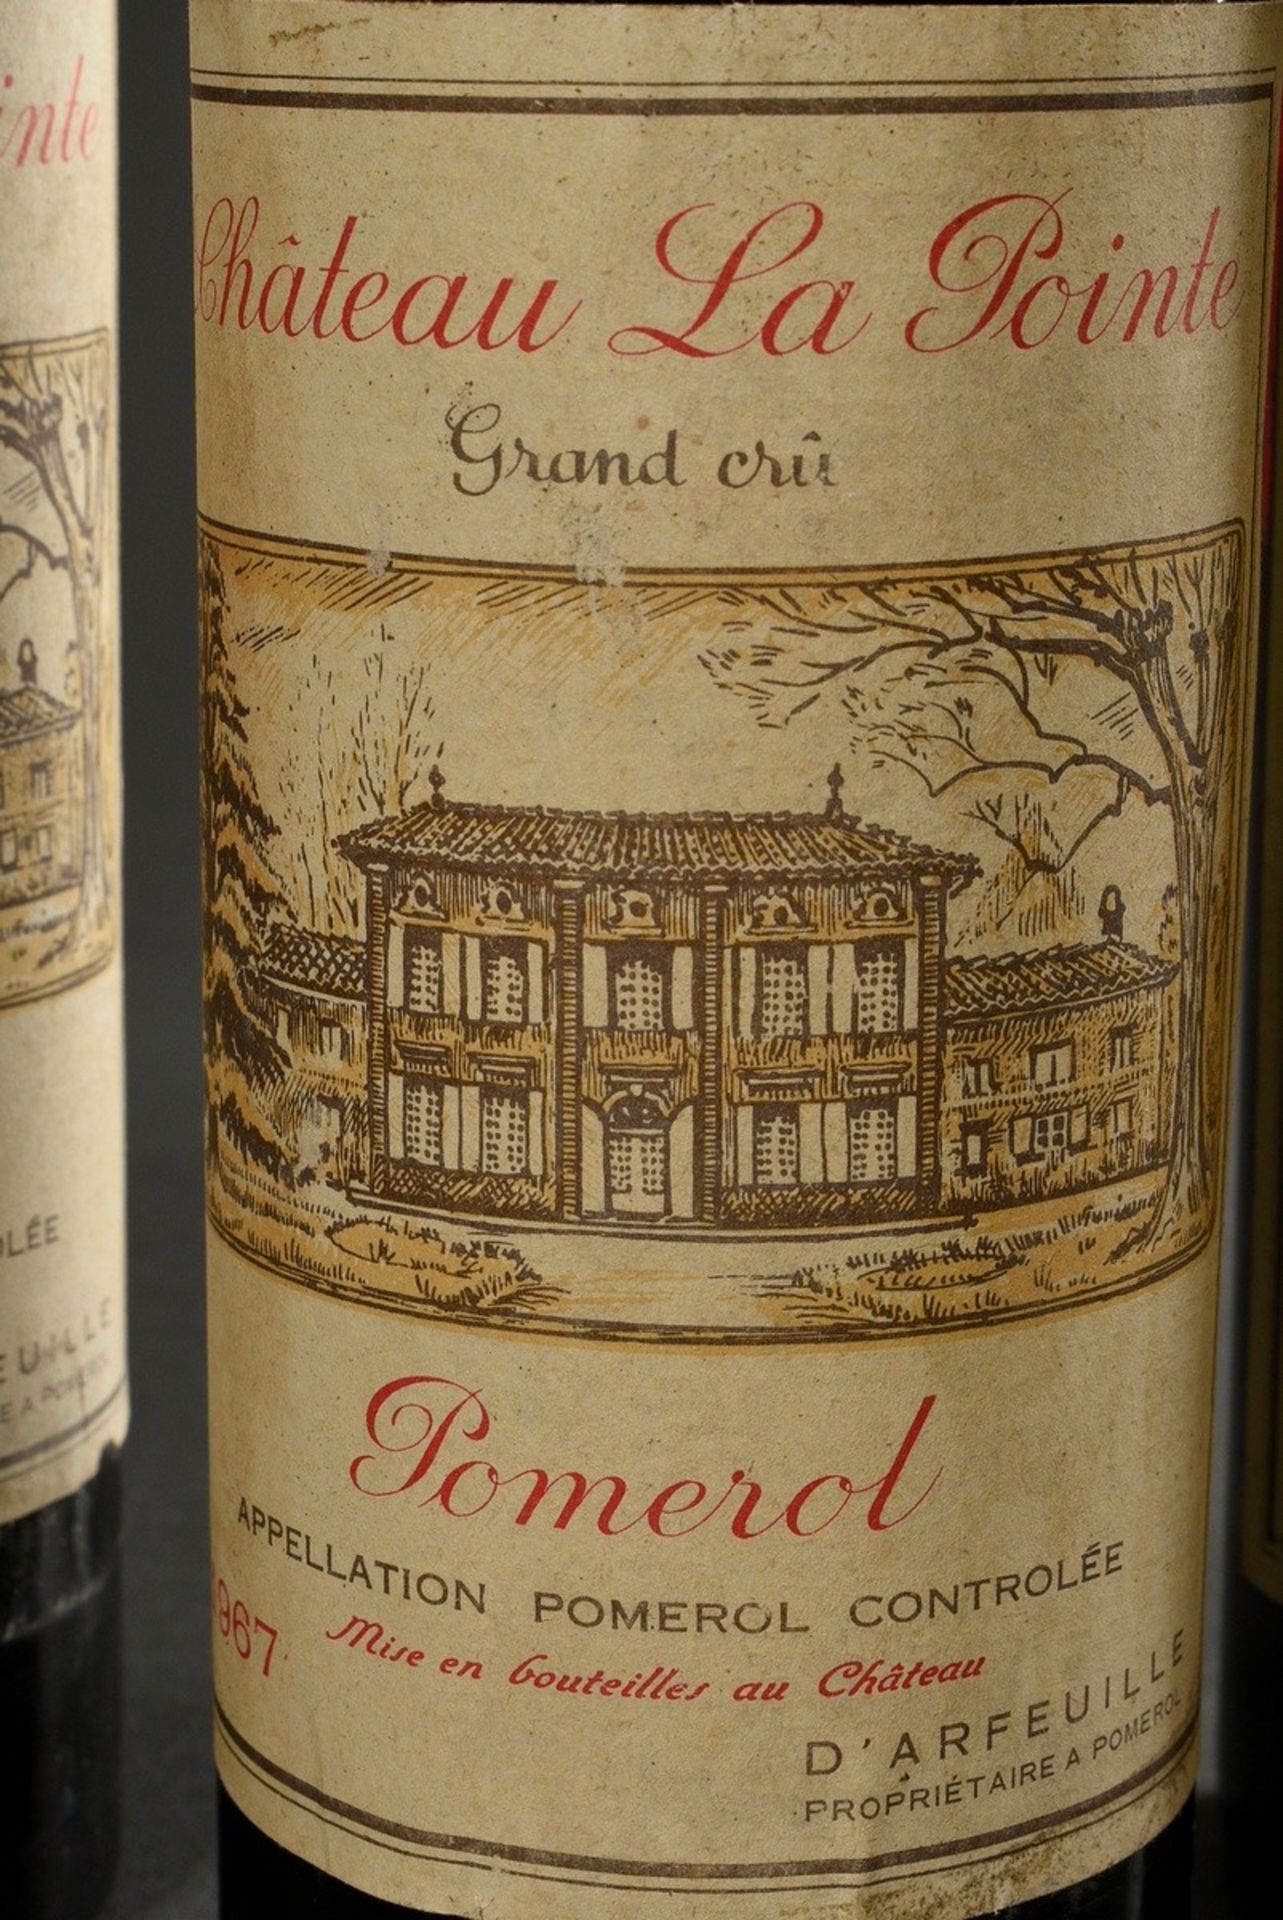 6 Flaschen 1967 Chateau La Pointe grand cru, mebac, Pomerol, Frankreich, Rotwein, 0,75l, durchgehen - Bild 3 aus 6